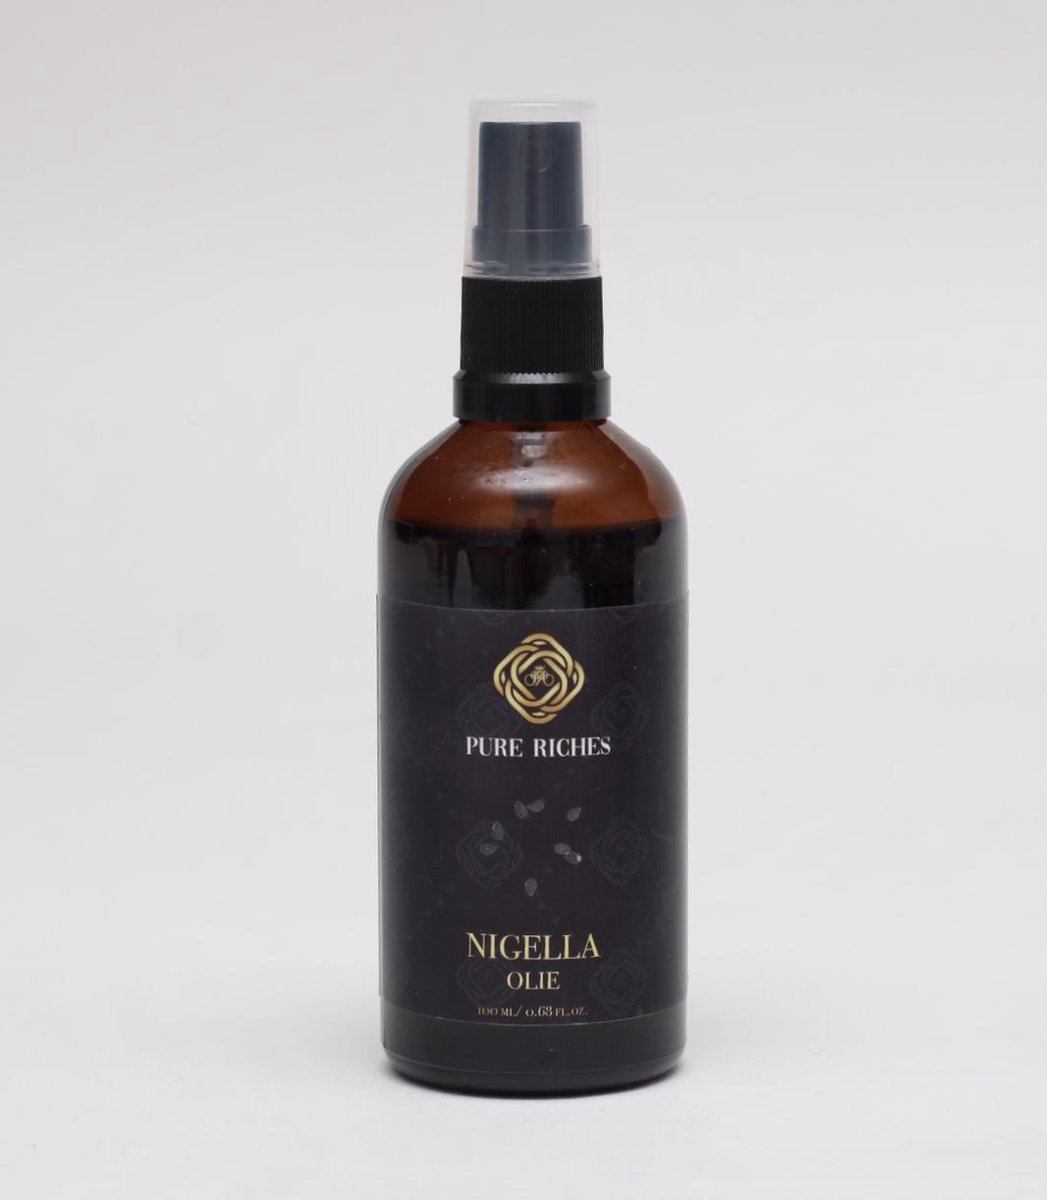 Pure Riches Nigella olie- Zwarte komijn olie 100ml - 100% puur biologisch - Geschikt voor dagelijks gebruik op de huid.